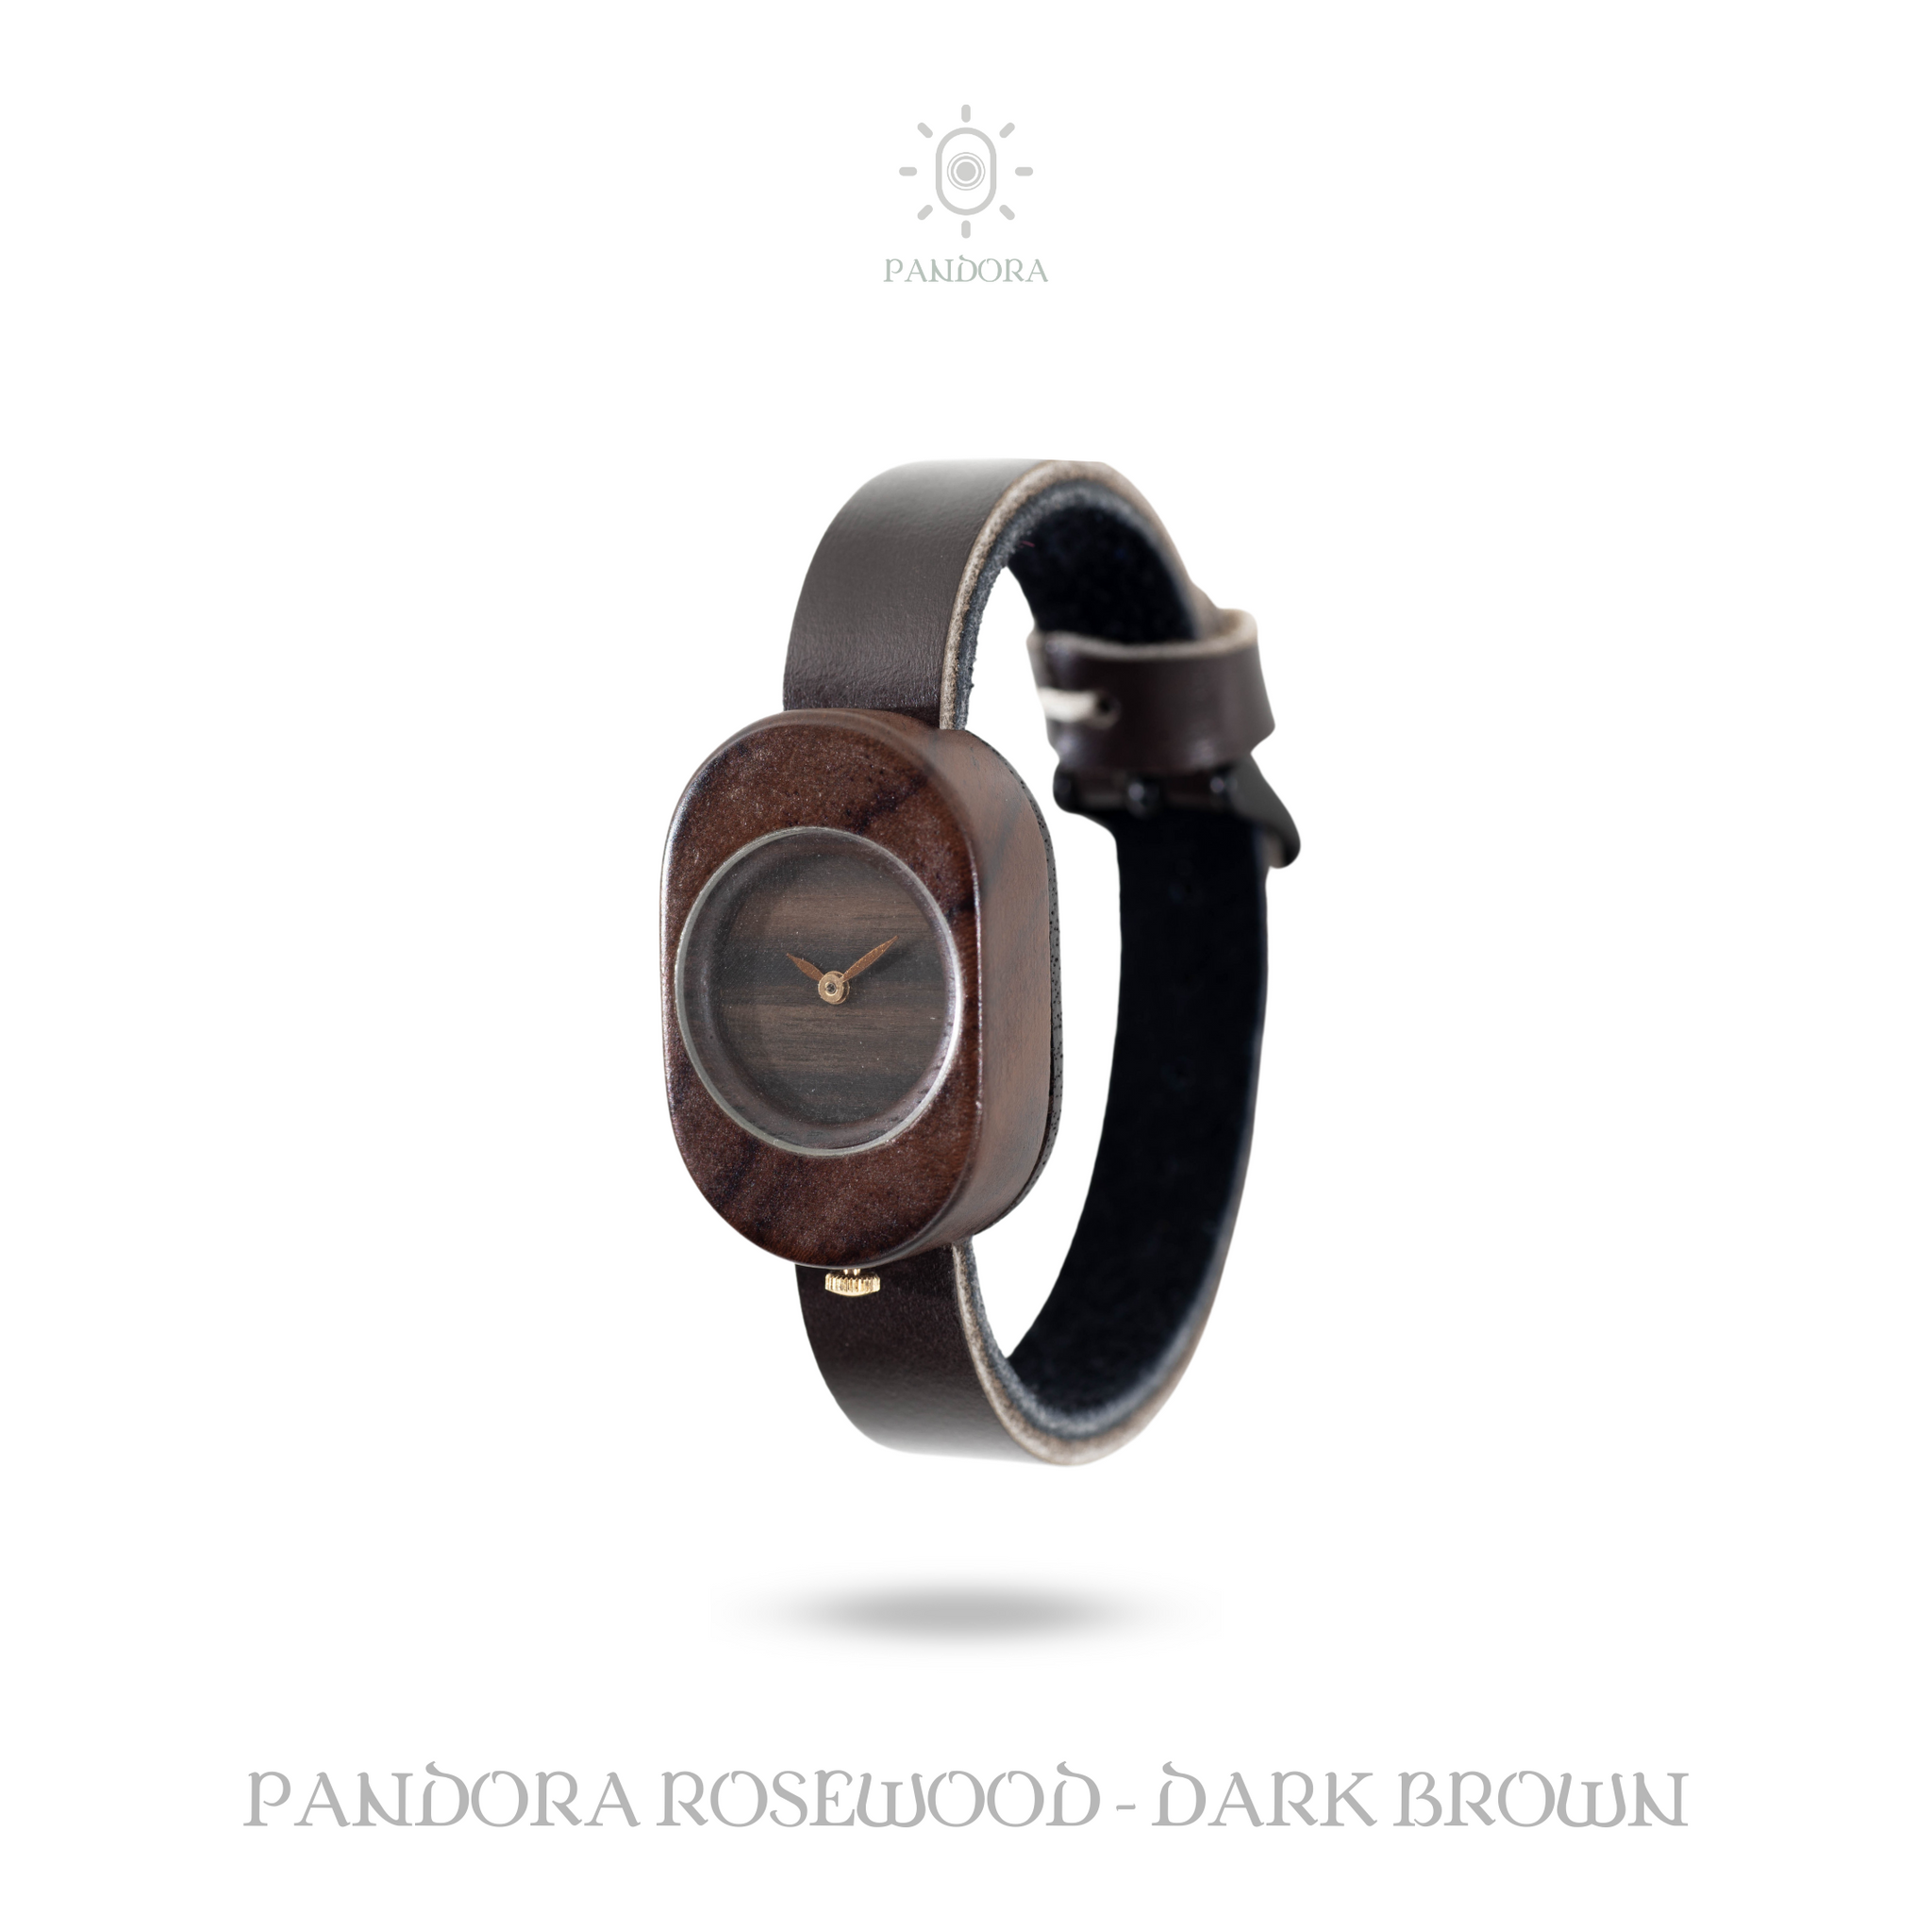 Eboni Pandora Rosewood - Dark Brown